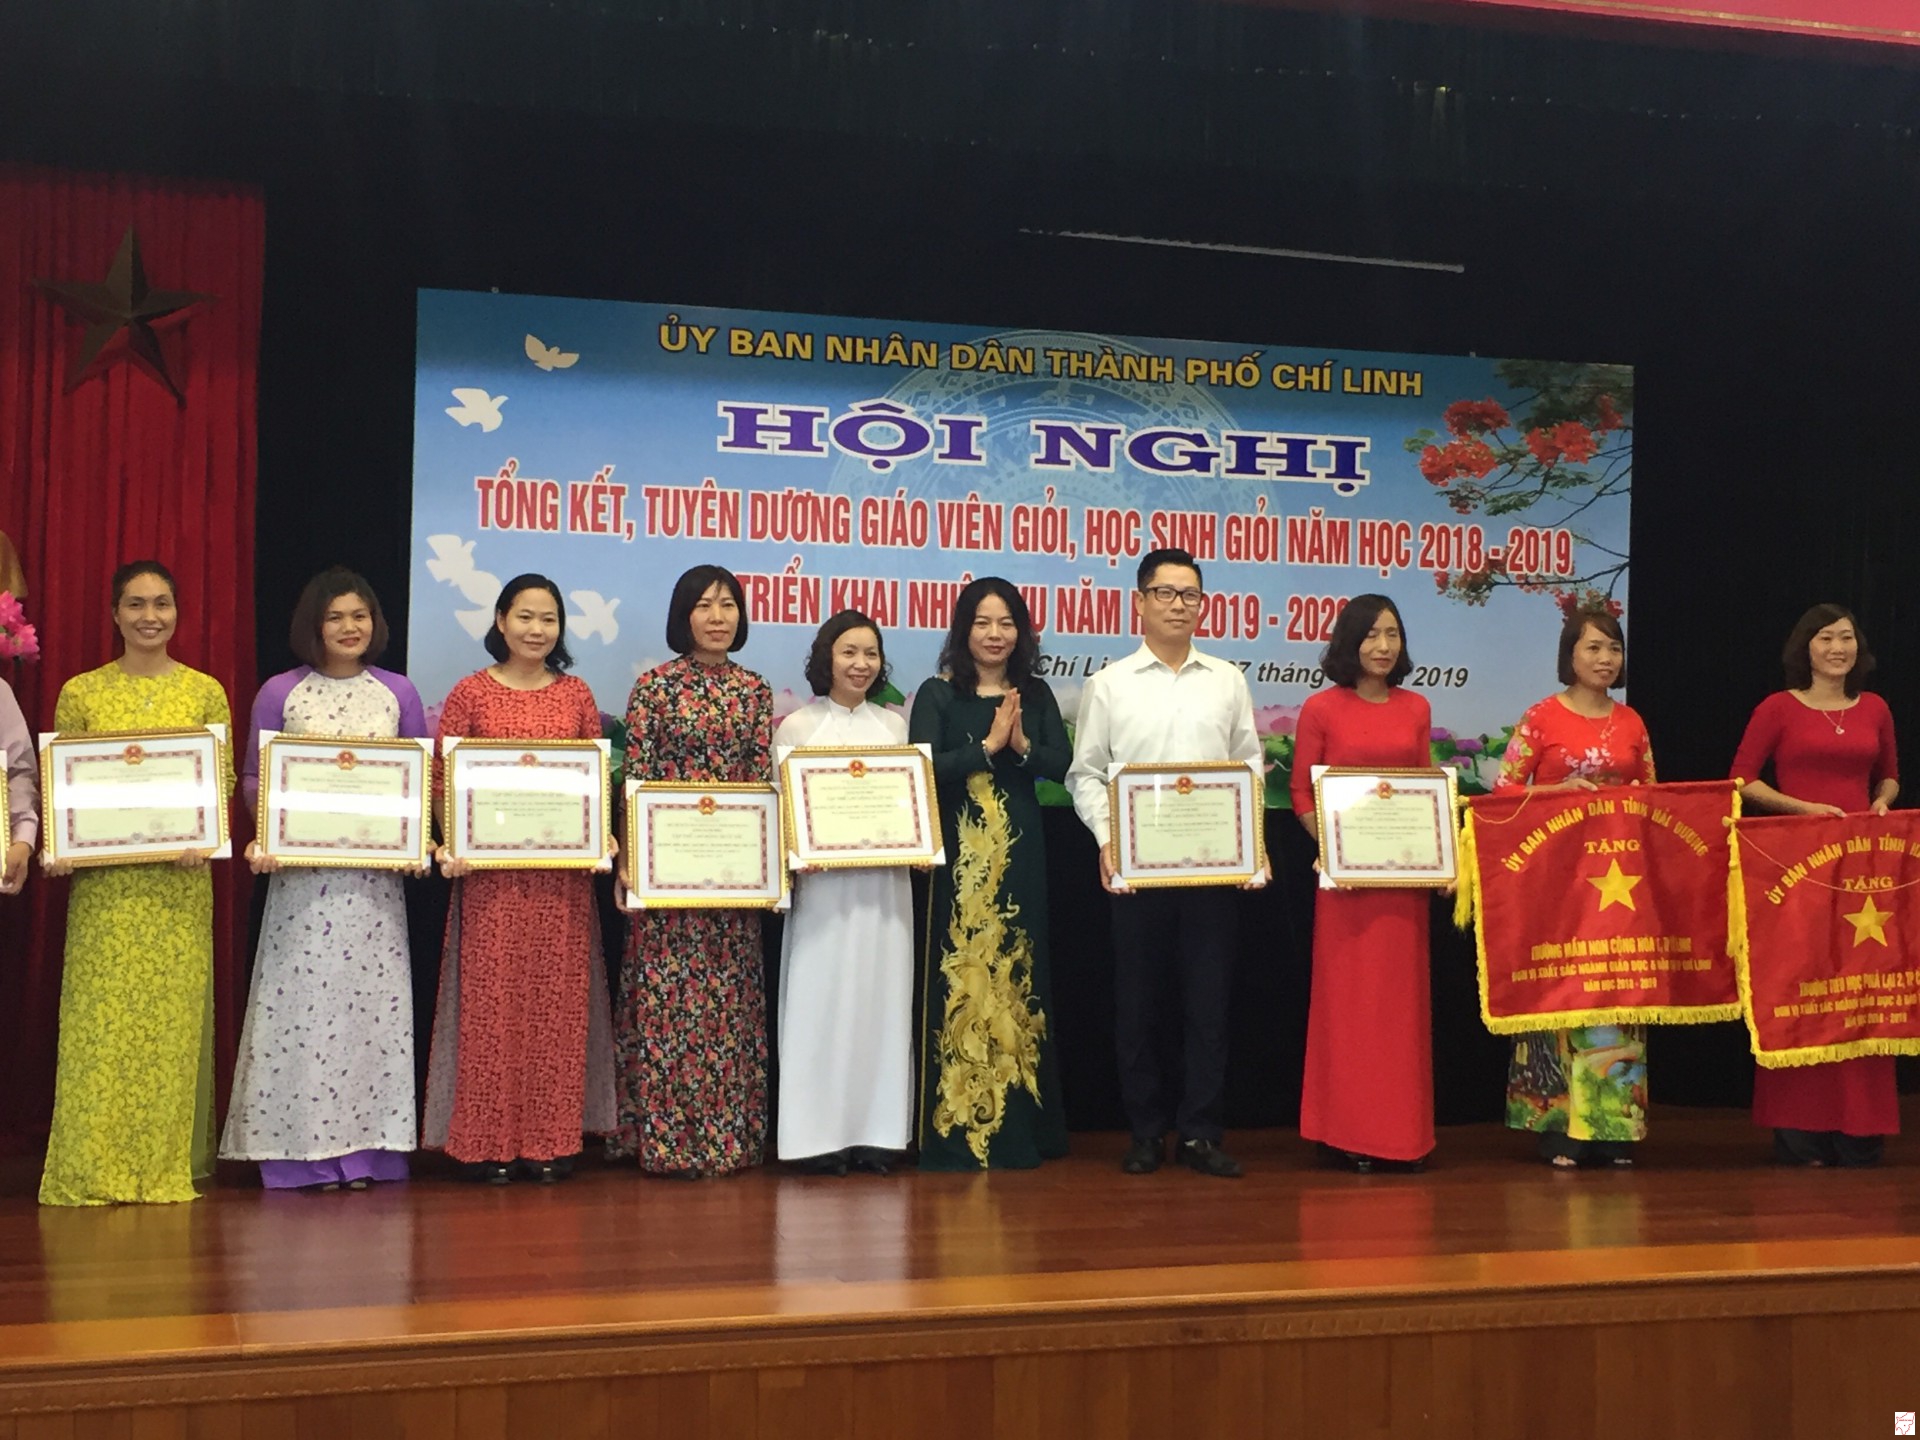 31 giáo viên dạy giỏi được Chủ tịch UBND TP Chí Linh tặng giấy khen